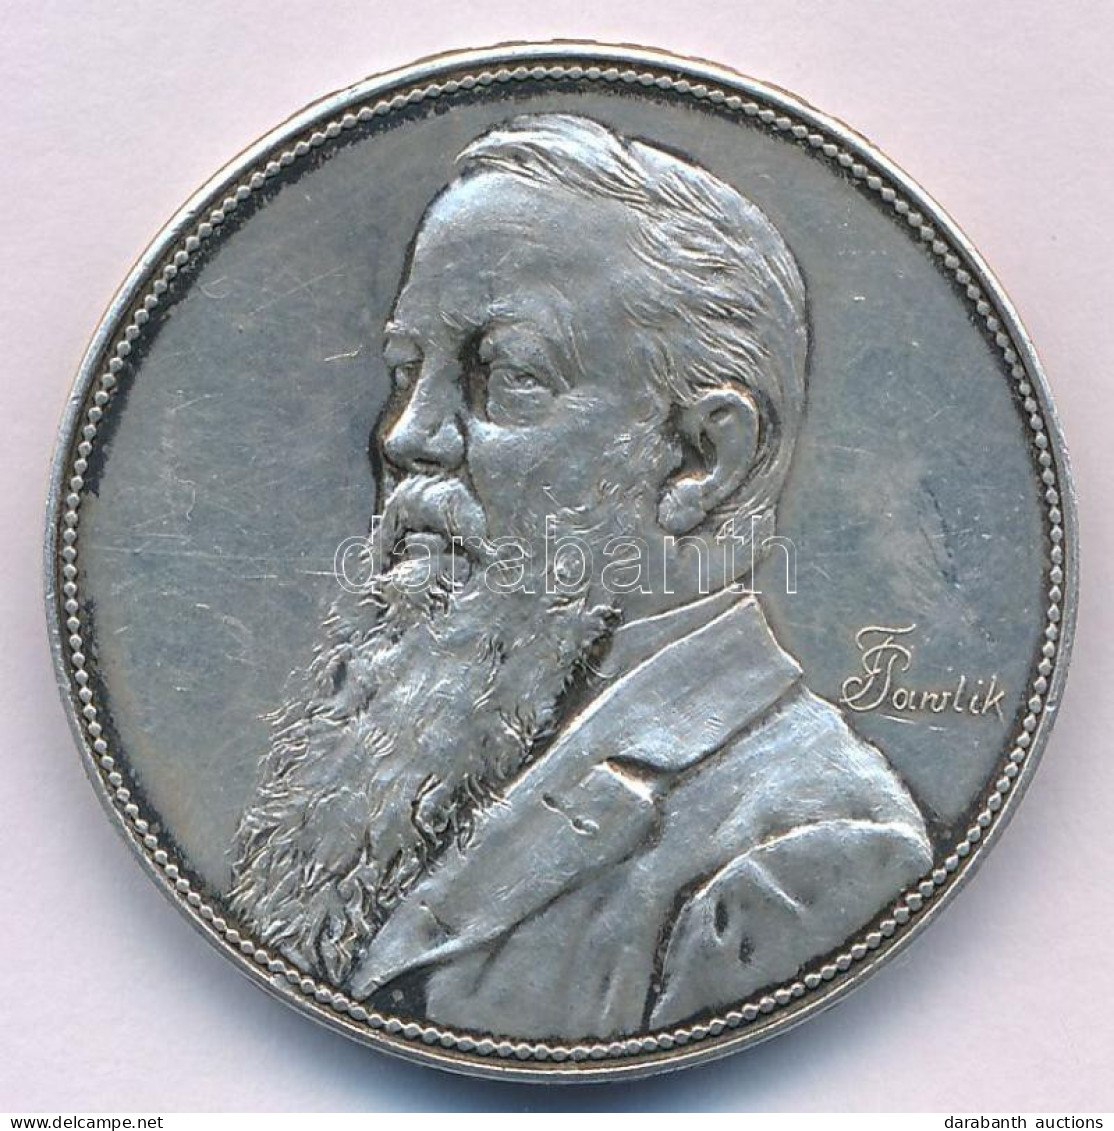 Ausztria ~1894. "Alois Richter / Die Medaillen Kaiser Franz Josef I" Ag Emlékérem, Peremen "A. Richter 1849-1894" Felira - Non Classificati